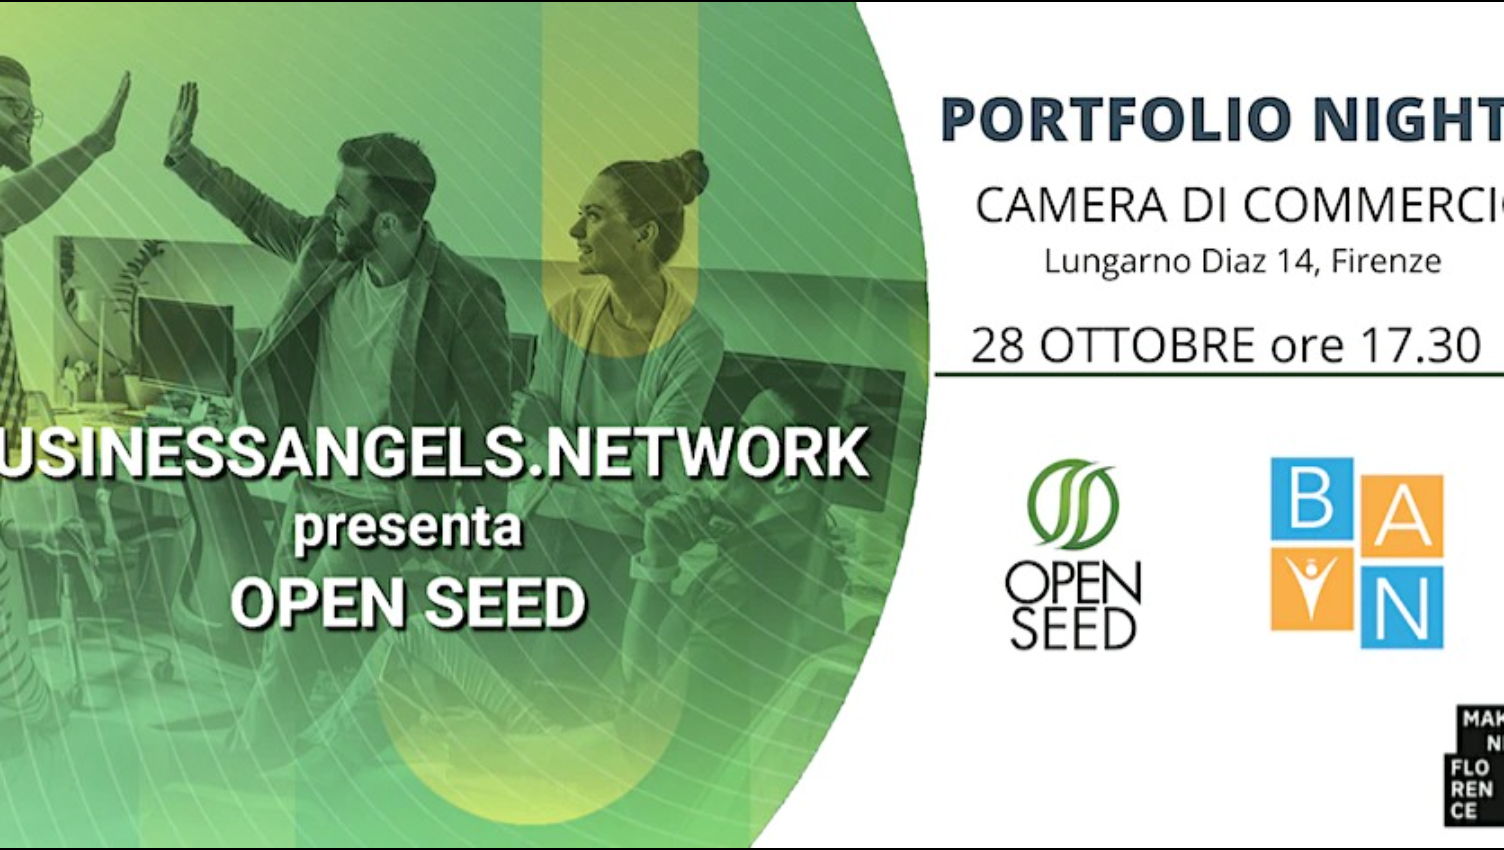 Evento Open Seed BAN ottobre 2022